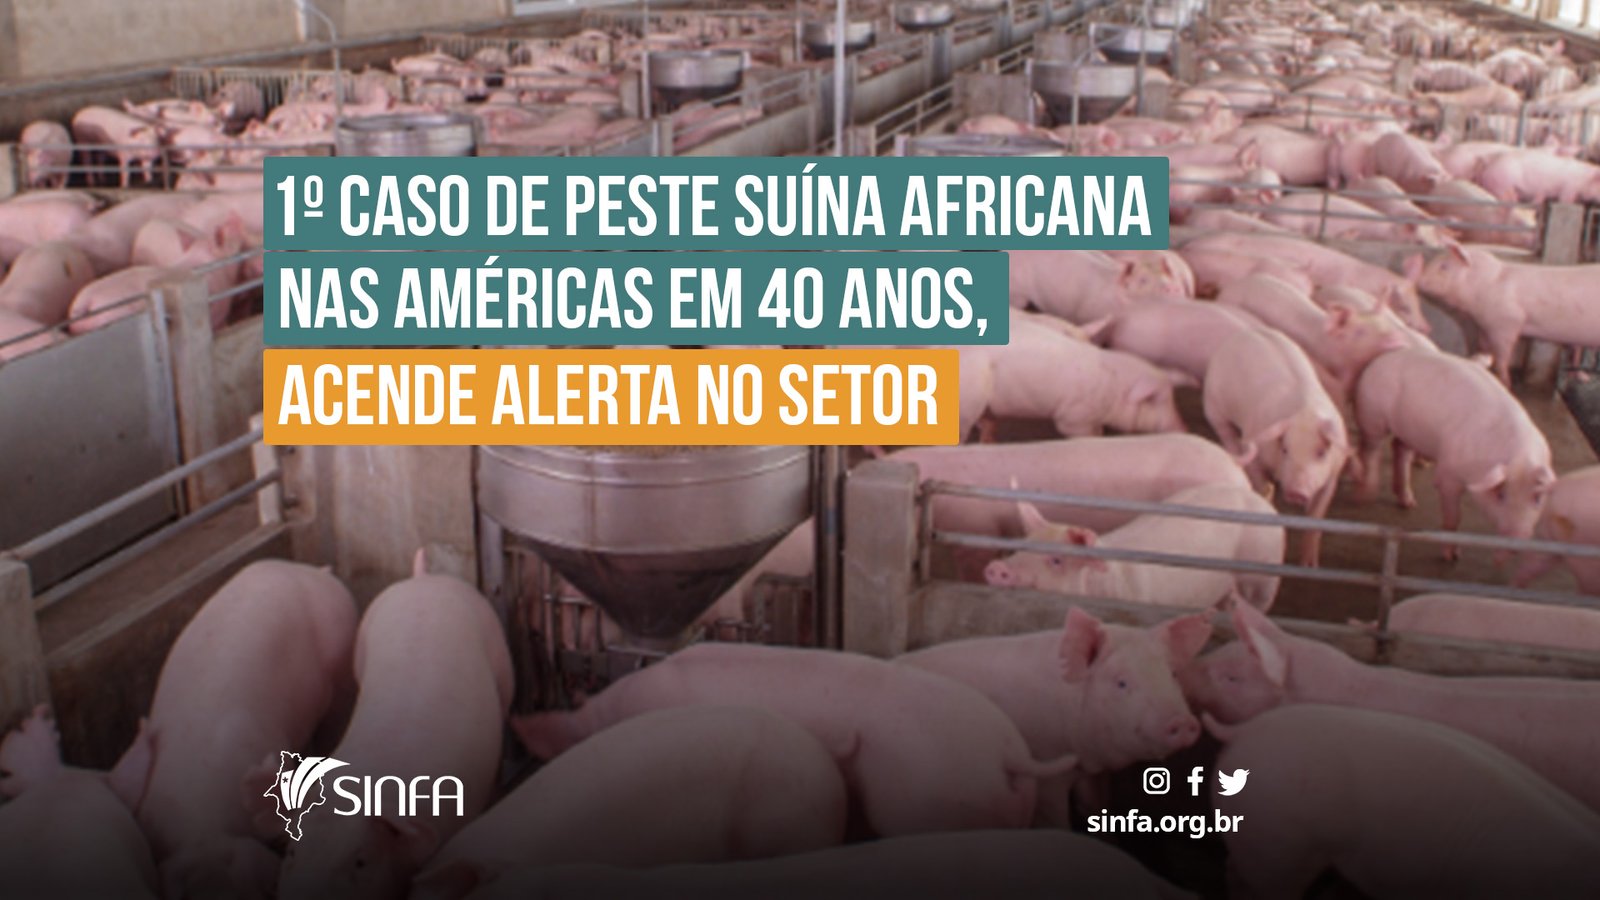 SINFA MA - Caso de peste suína africana nas Américas em 40 anos, acende alerta no setor